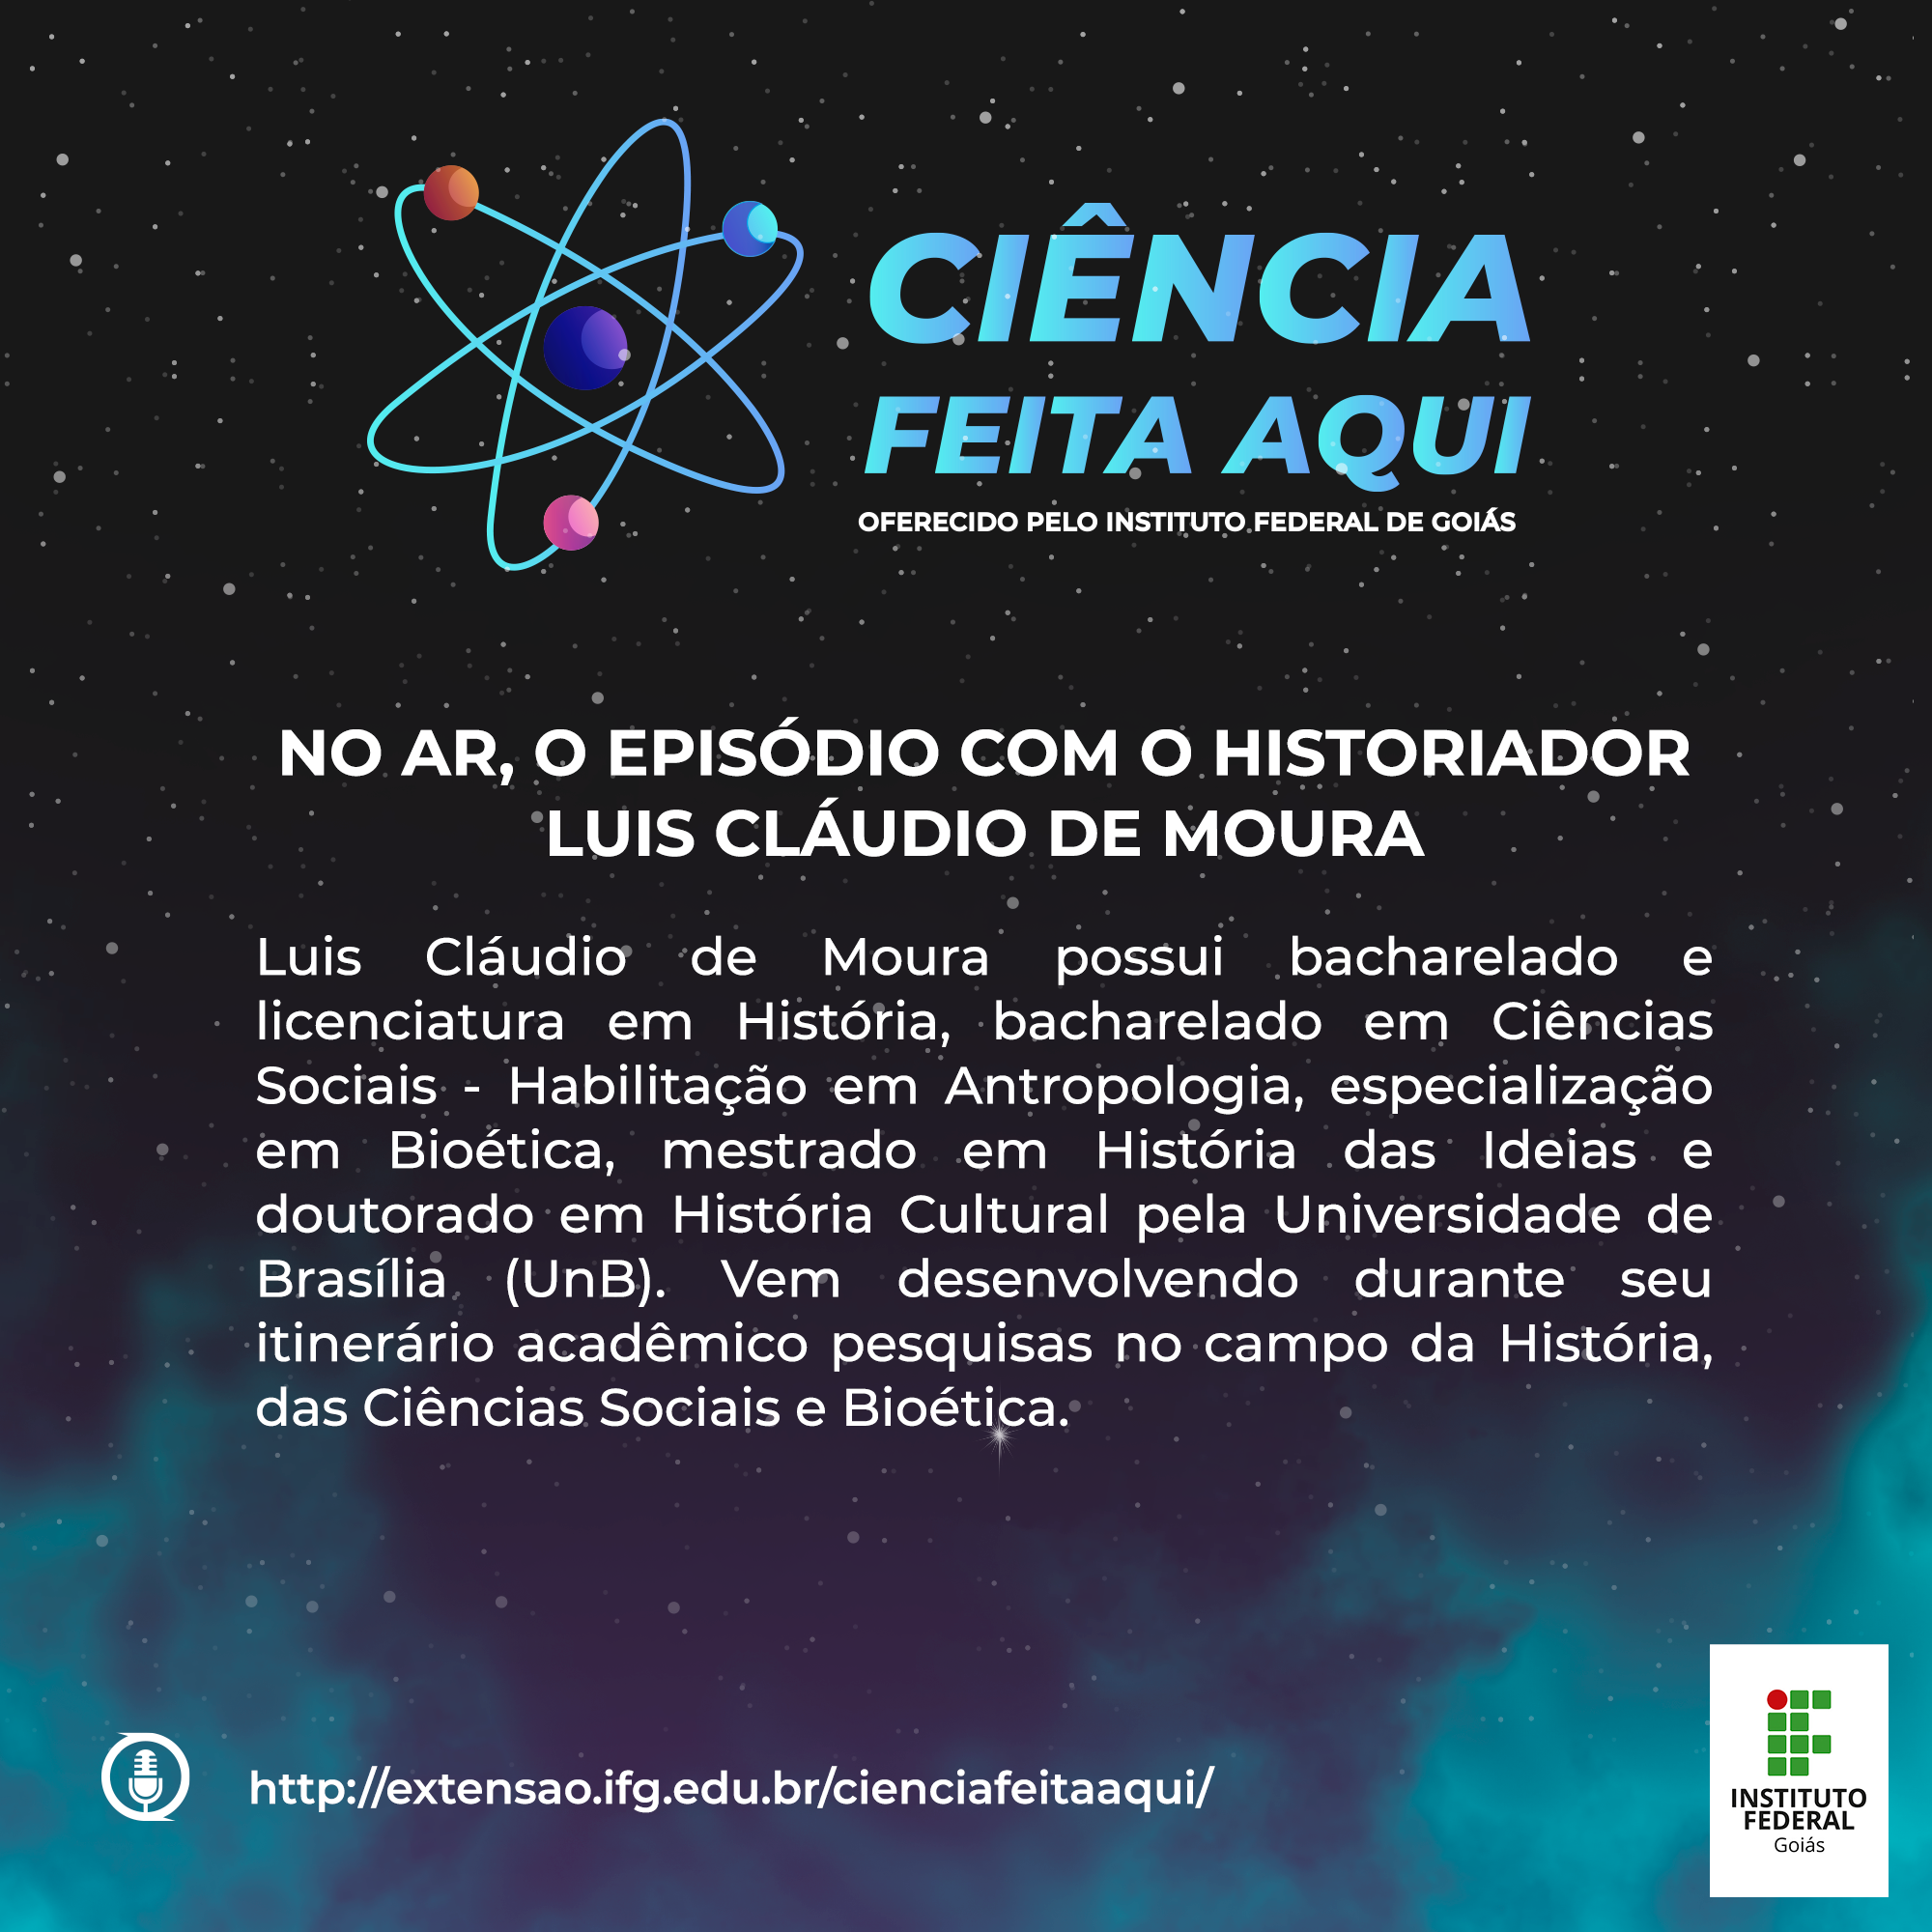 Cards3 - Luis Cláudio de Moura - Historiador